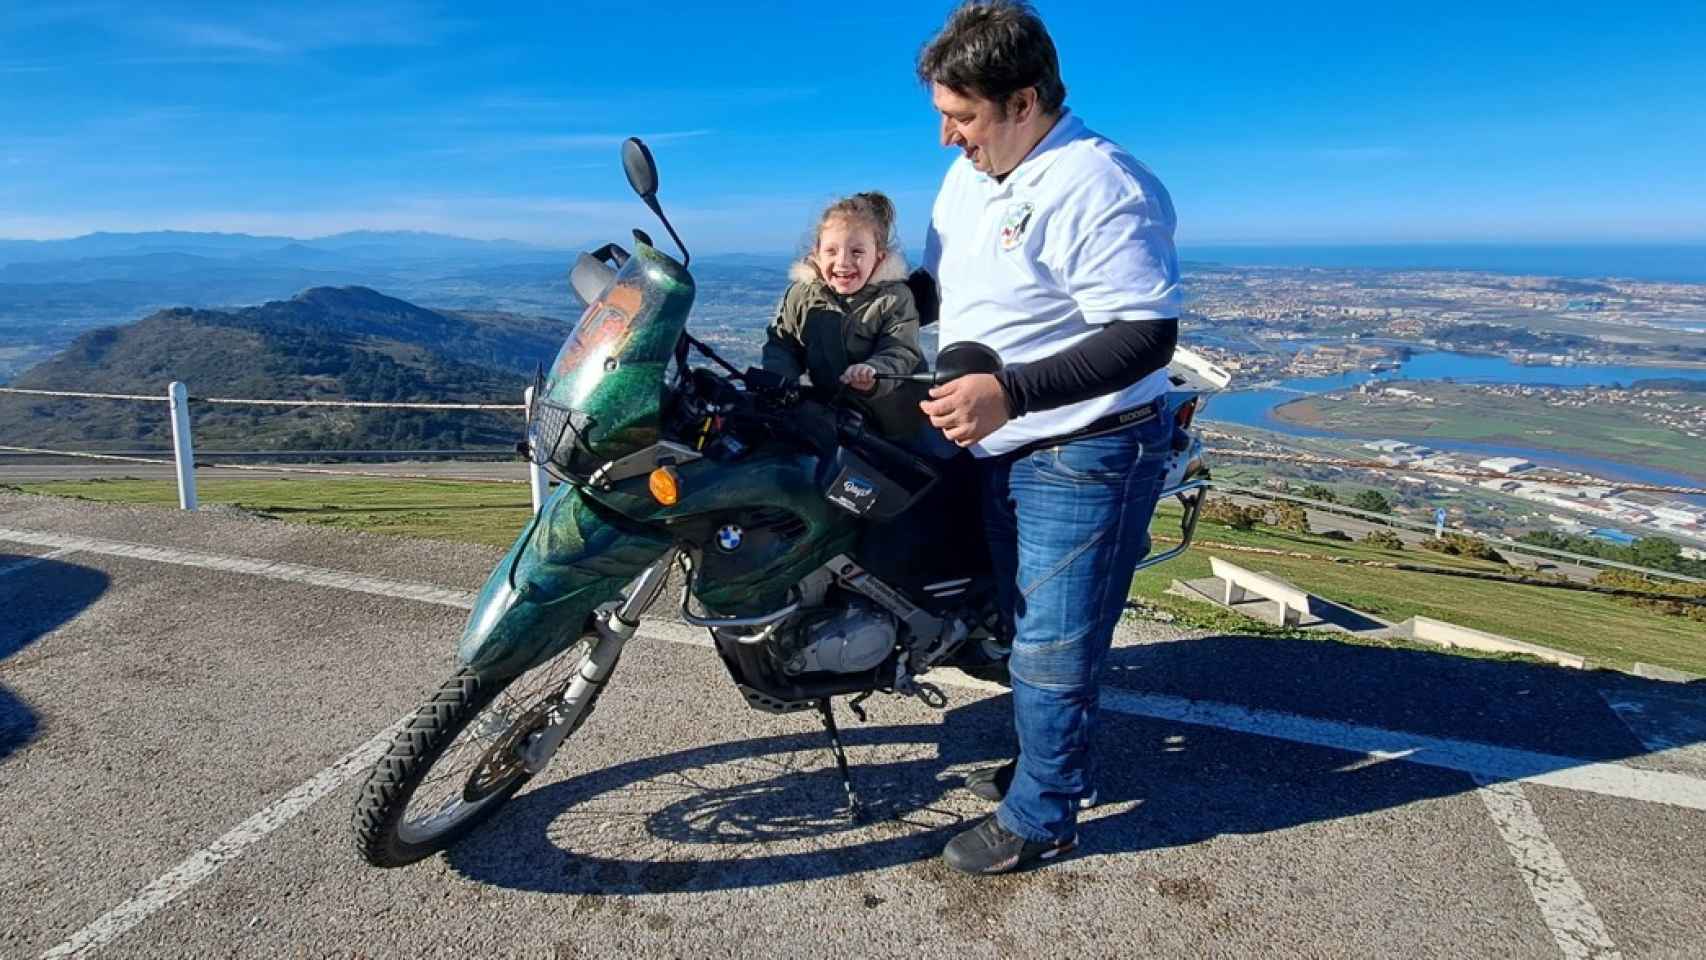 Zoe con su padre en la moto